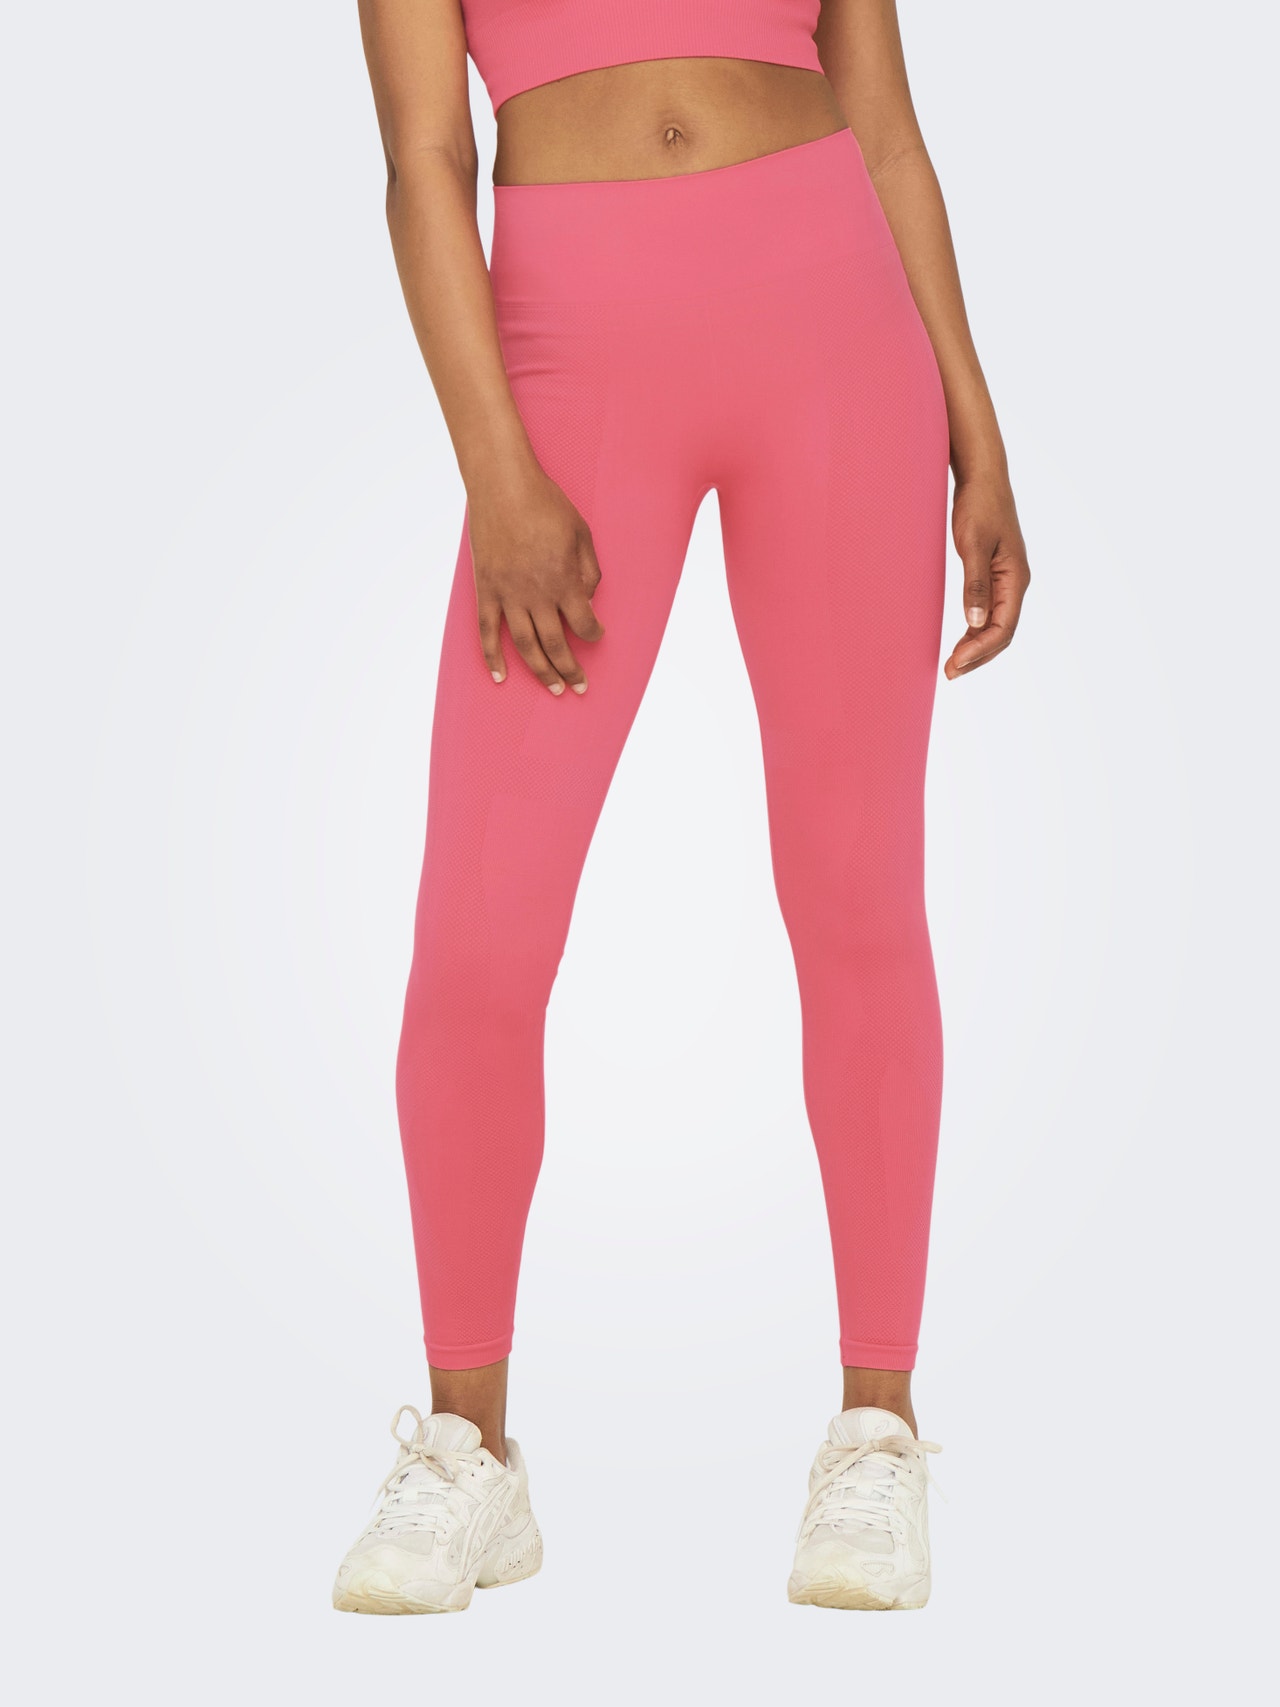 Niuer Women Solid Color Casual Yoga Pants Ladies Casual Leggings Slim Fit  Beach Skinny Capri Pants